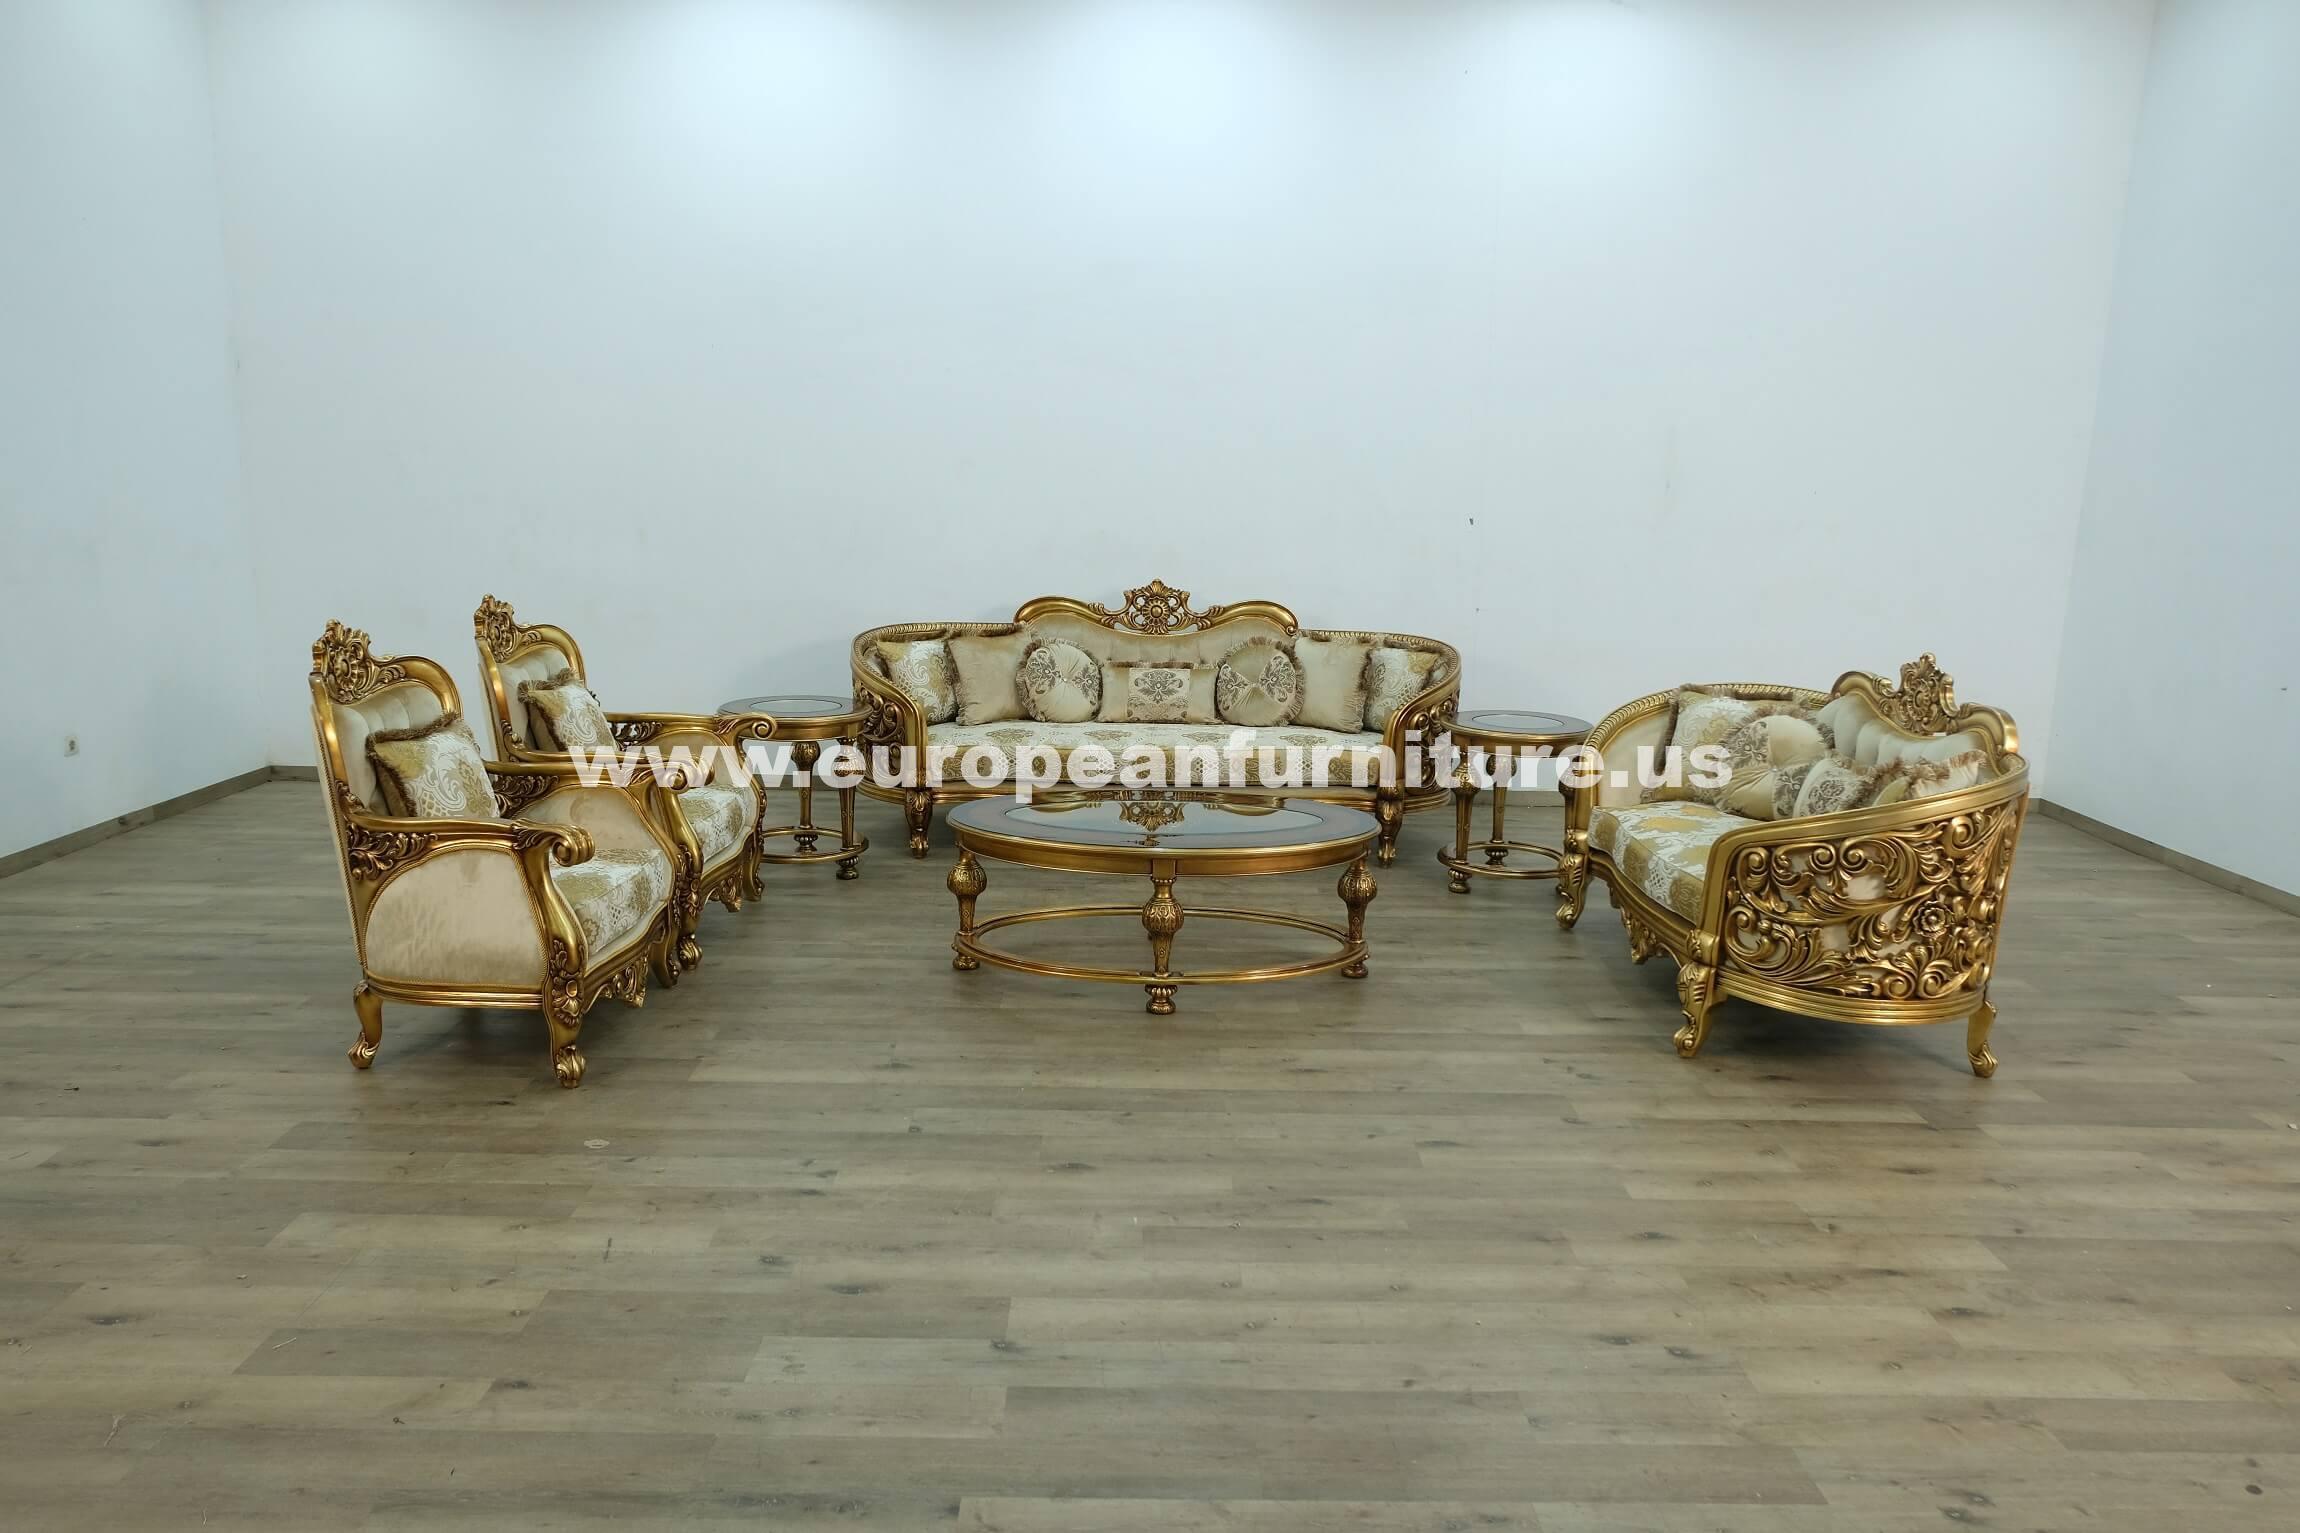 

    
Classic Antique Bronze Gold Fabric 30016 BELLAGIO Sofa Set 4Pcs EUROPEAN FURNITURE
